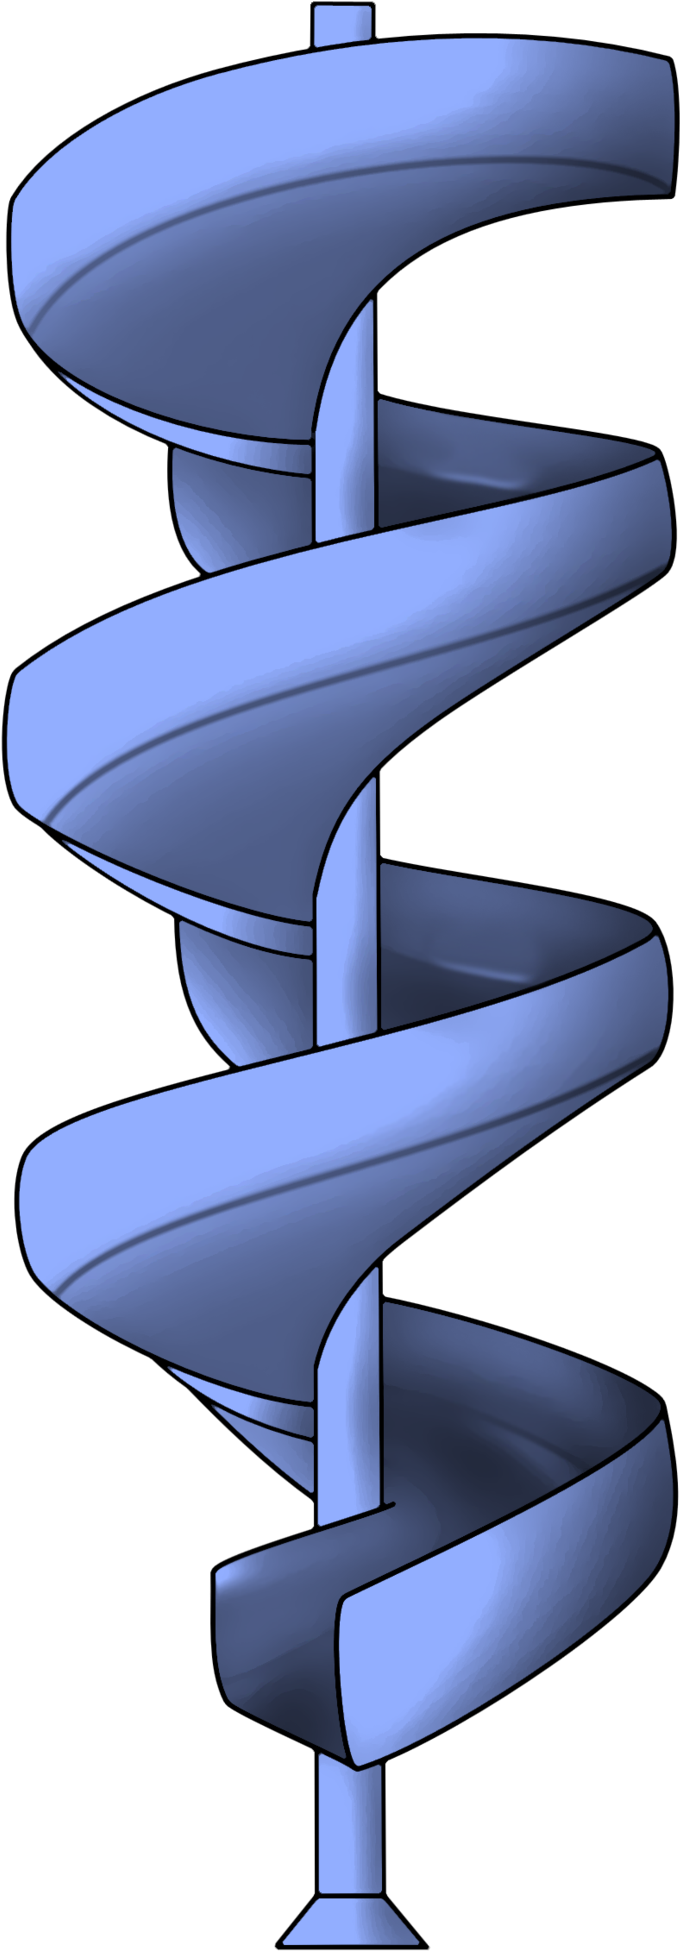 Spiral Slide By Reitanna Seishin Spiral Slide By Reitanna - Spiral Slide Transparent (1024x2029)